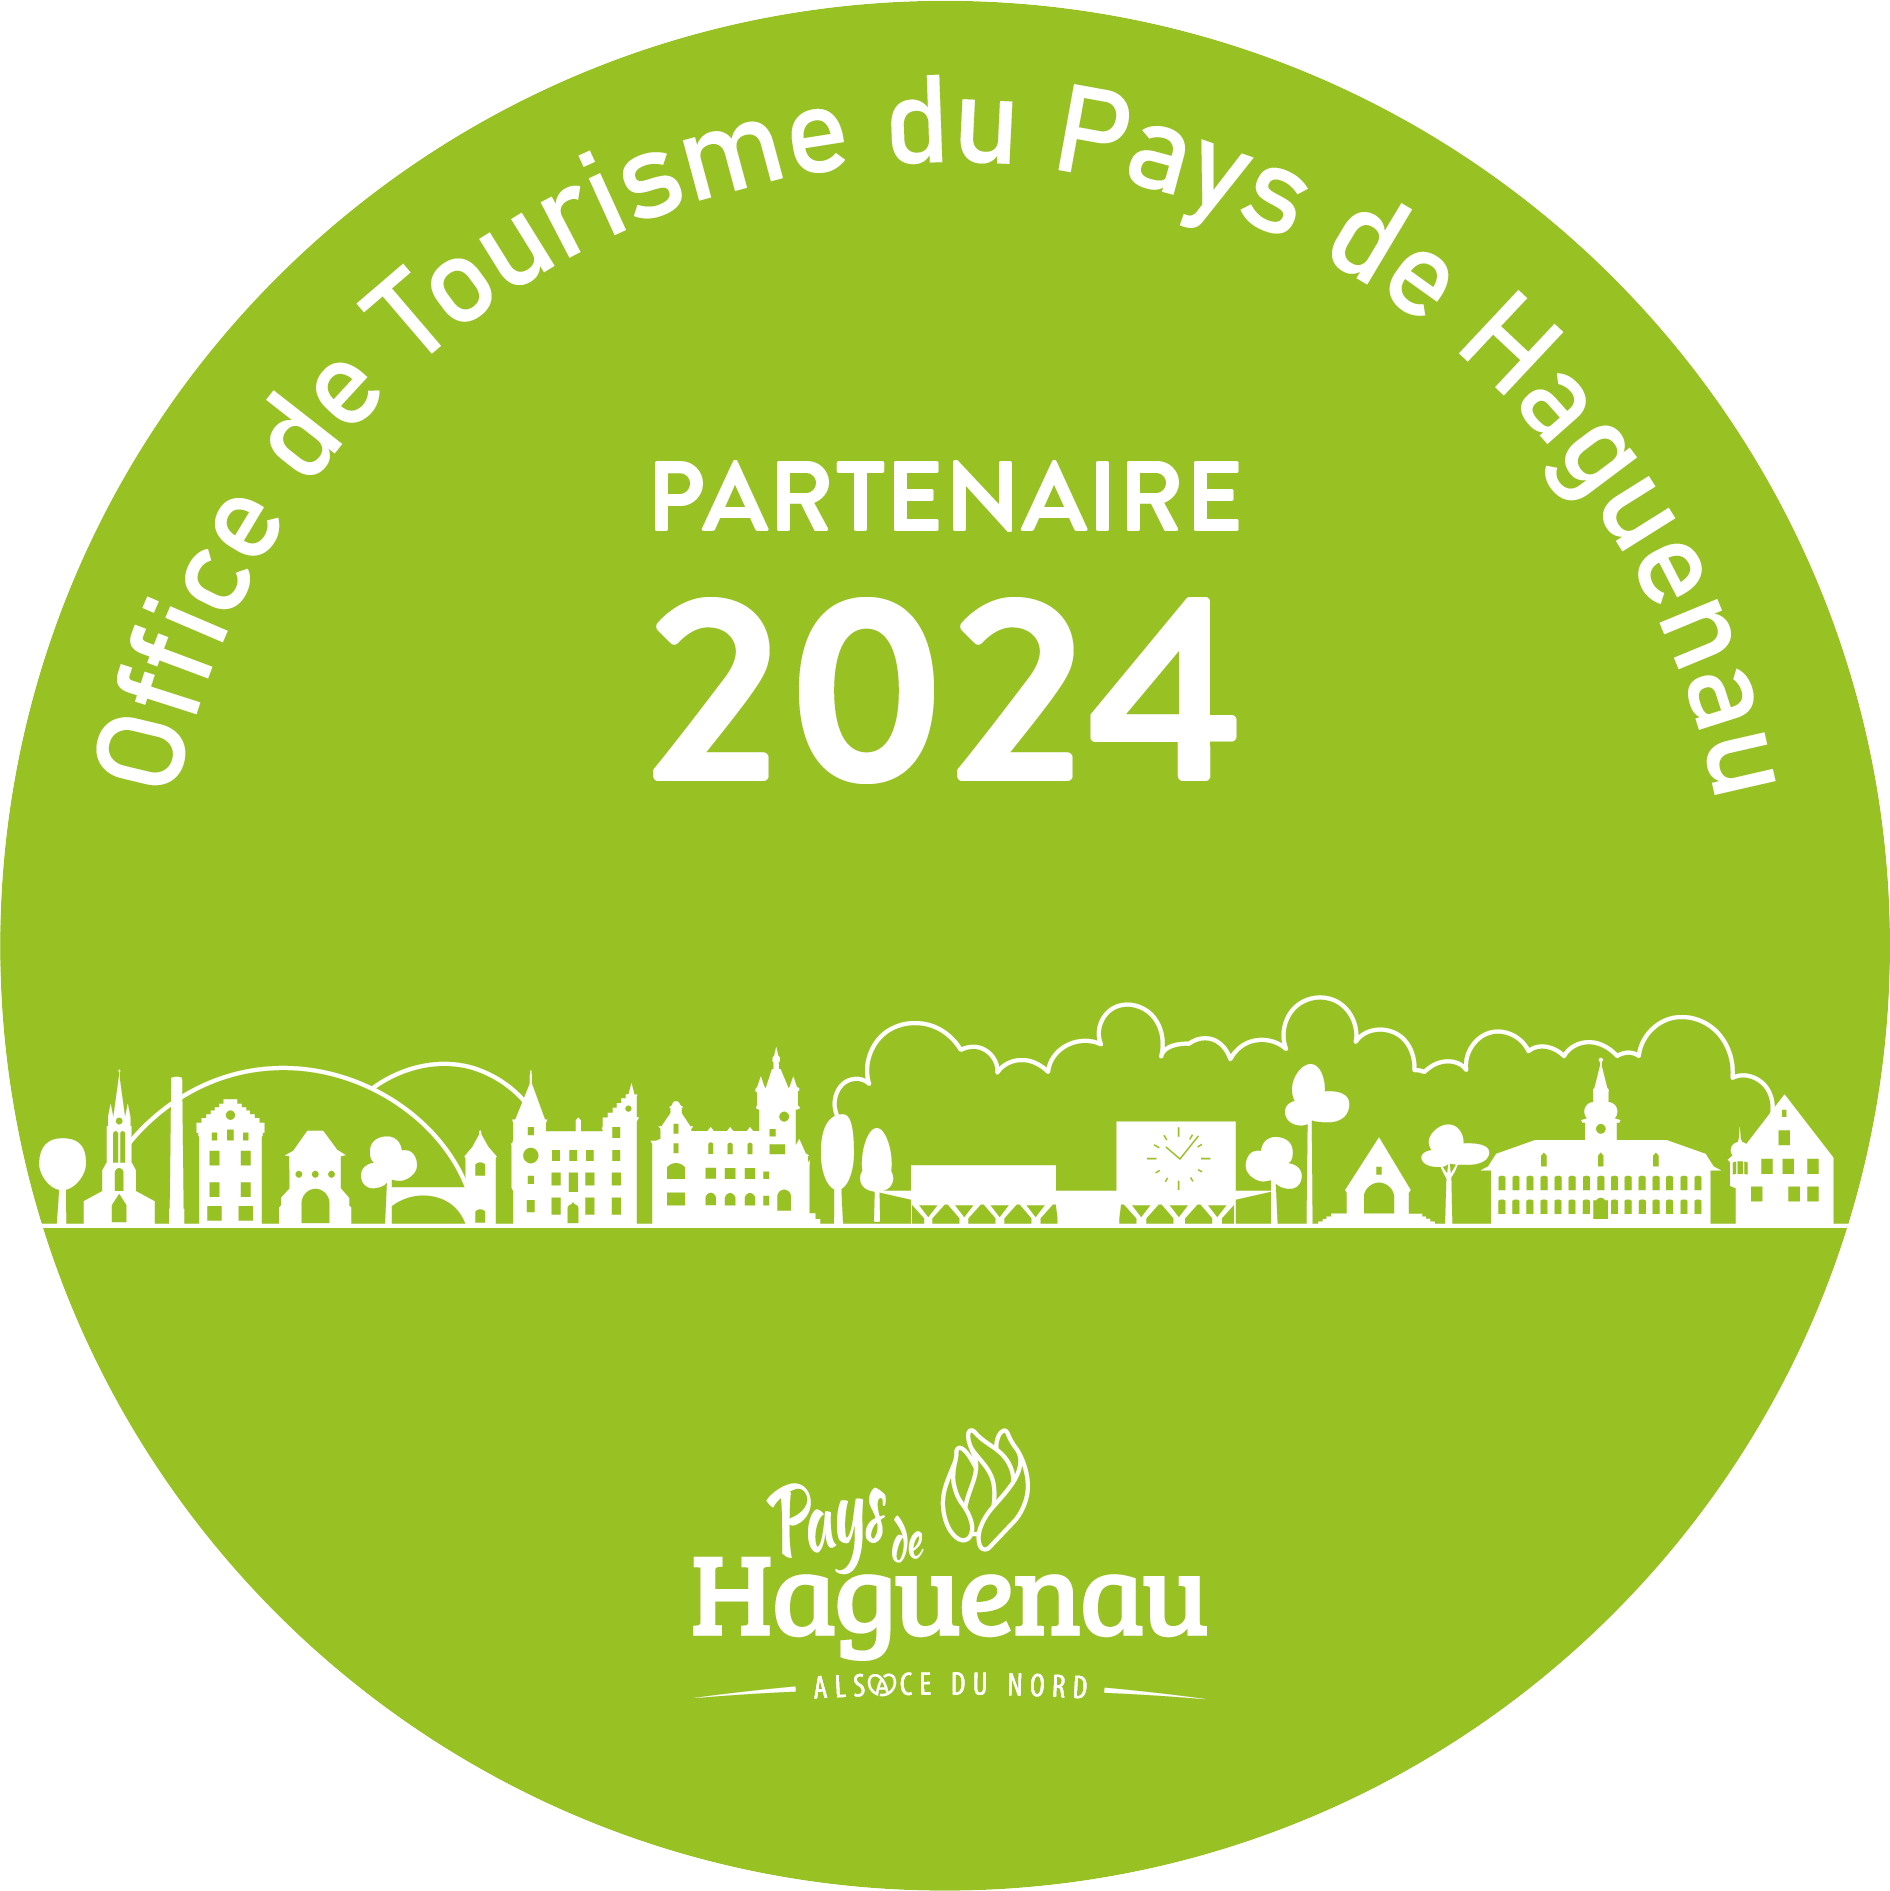 Die Partner 2024 des Fremdenverkehrsamtes Pays de Haguenau